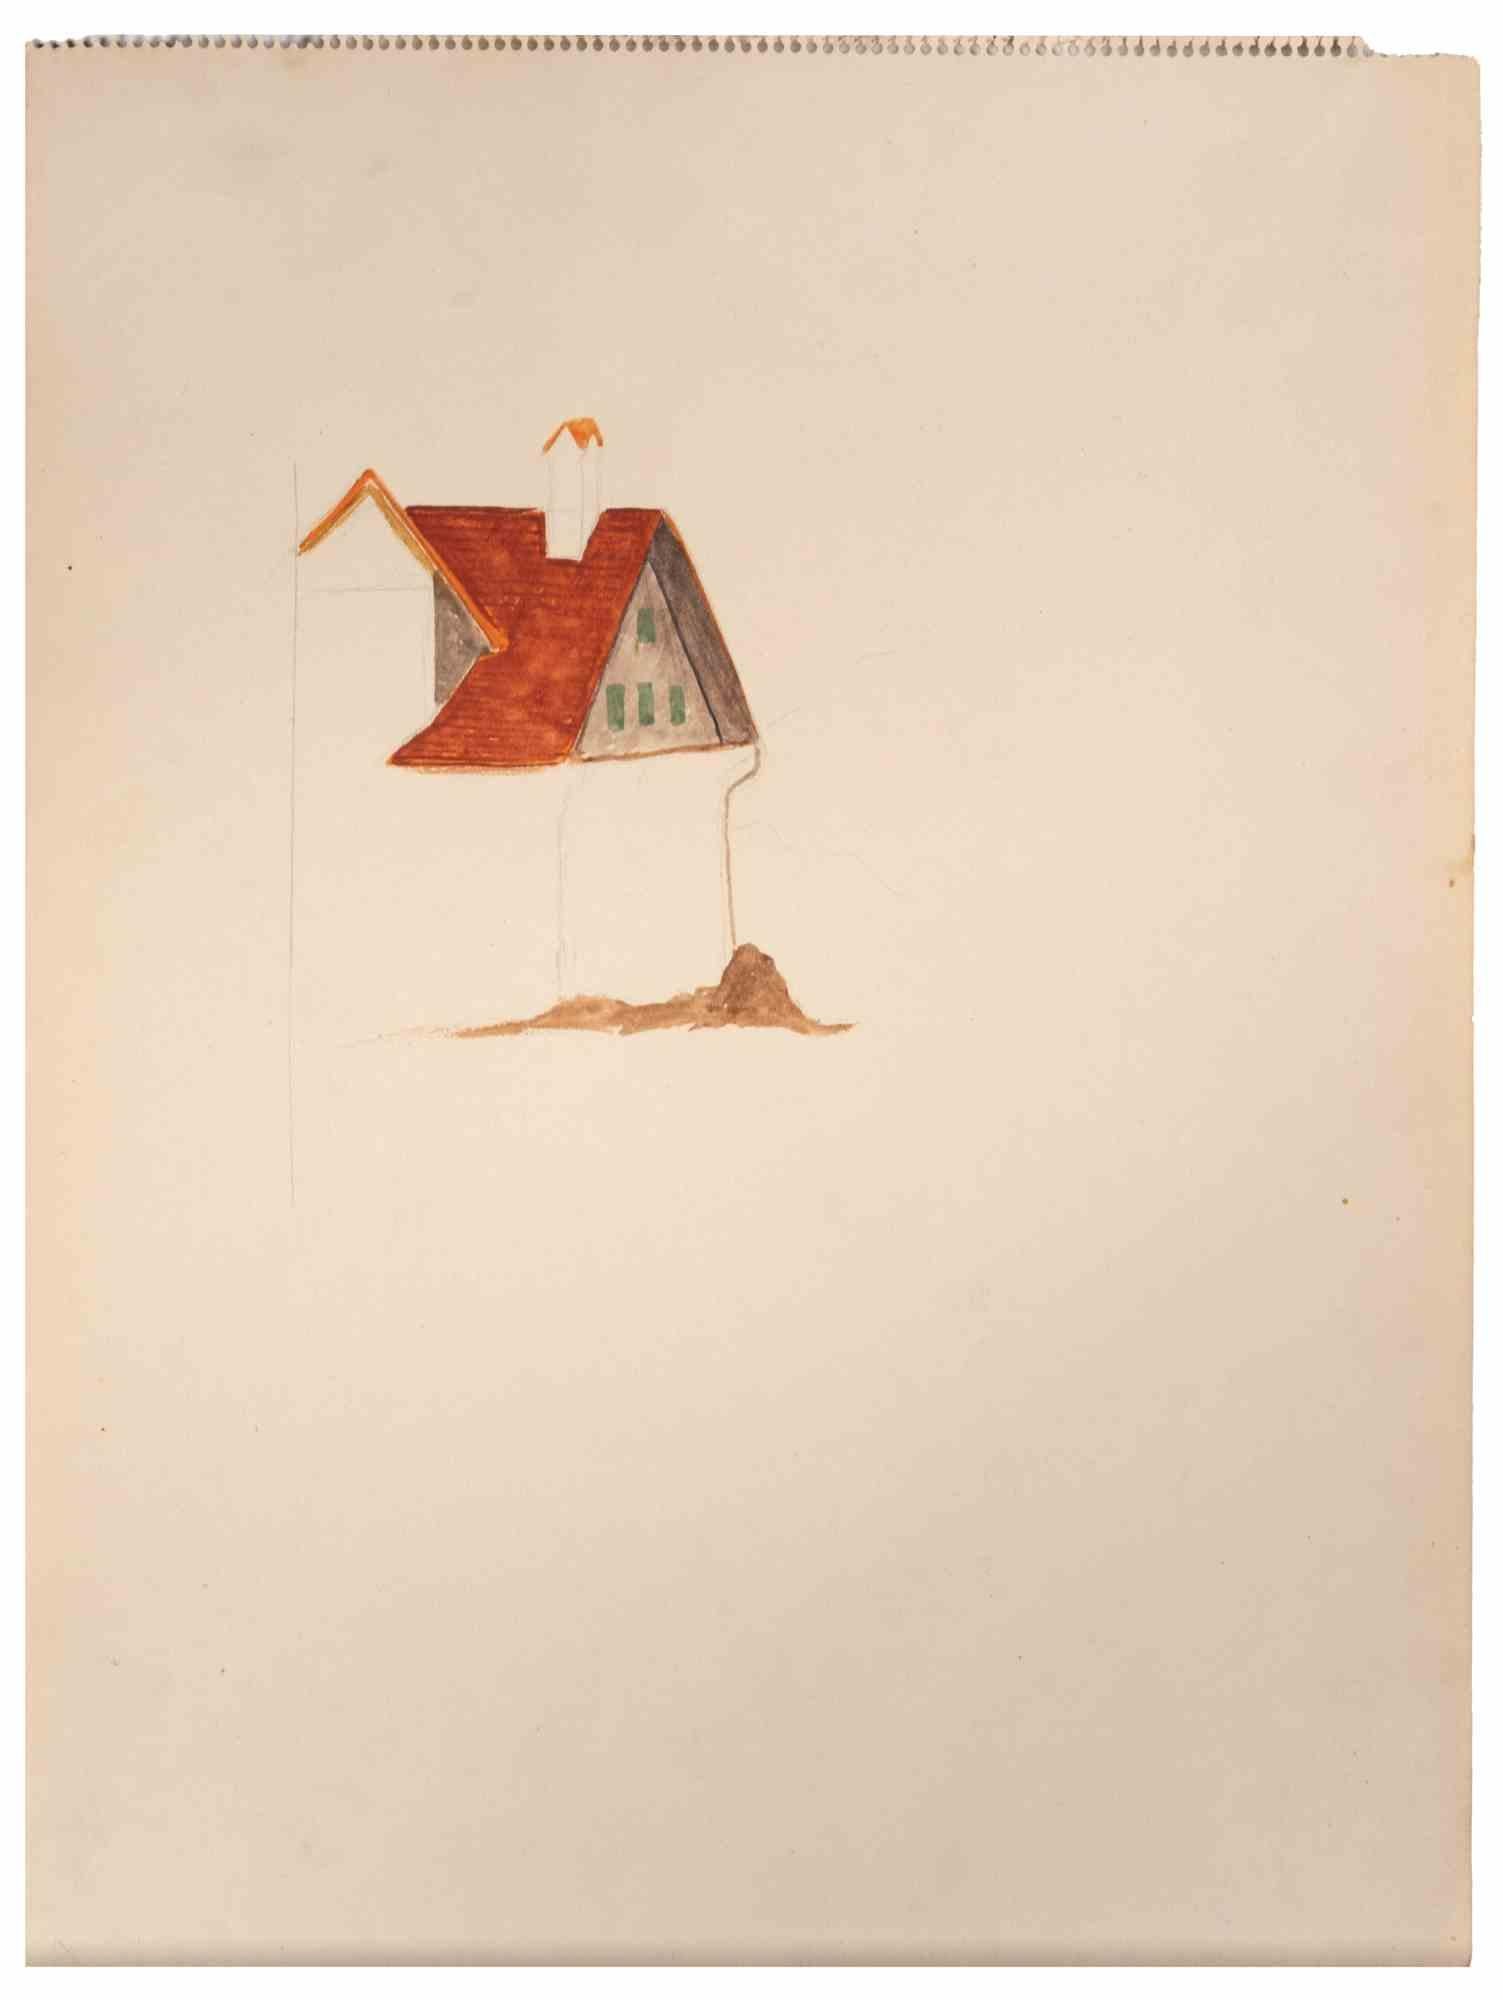 Haus ist eine Zeichnung von Suzanne Tourte aus der Mitte des 20. Jahrhunderts.

Tusche und Aquarell auf Papier.

In gutem Zustand.

Das Kunstwerk wird durch geschickte Striche meisterhaft dargestellt.